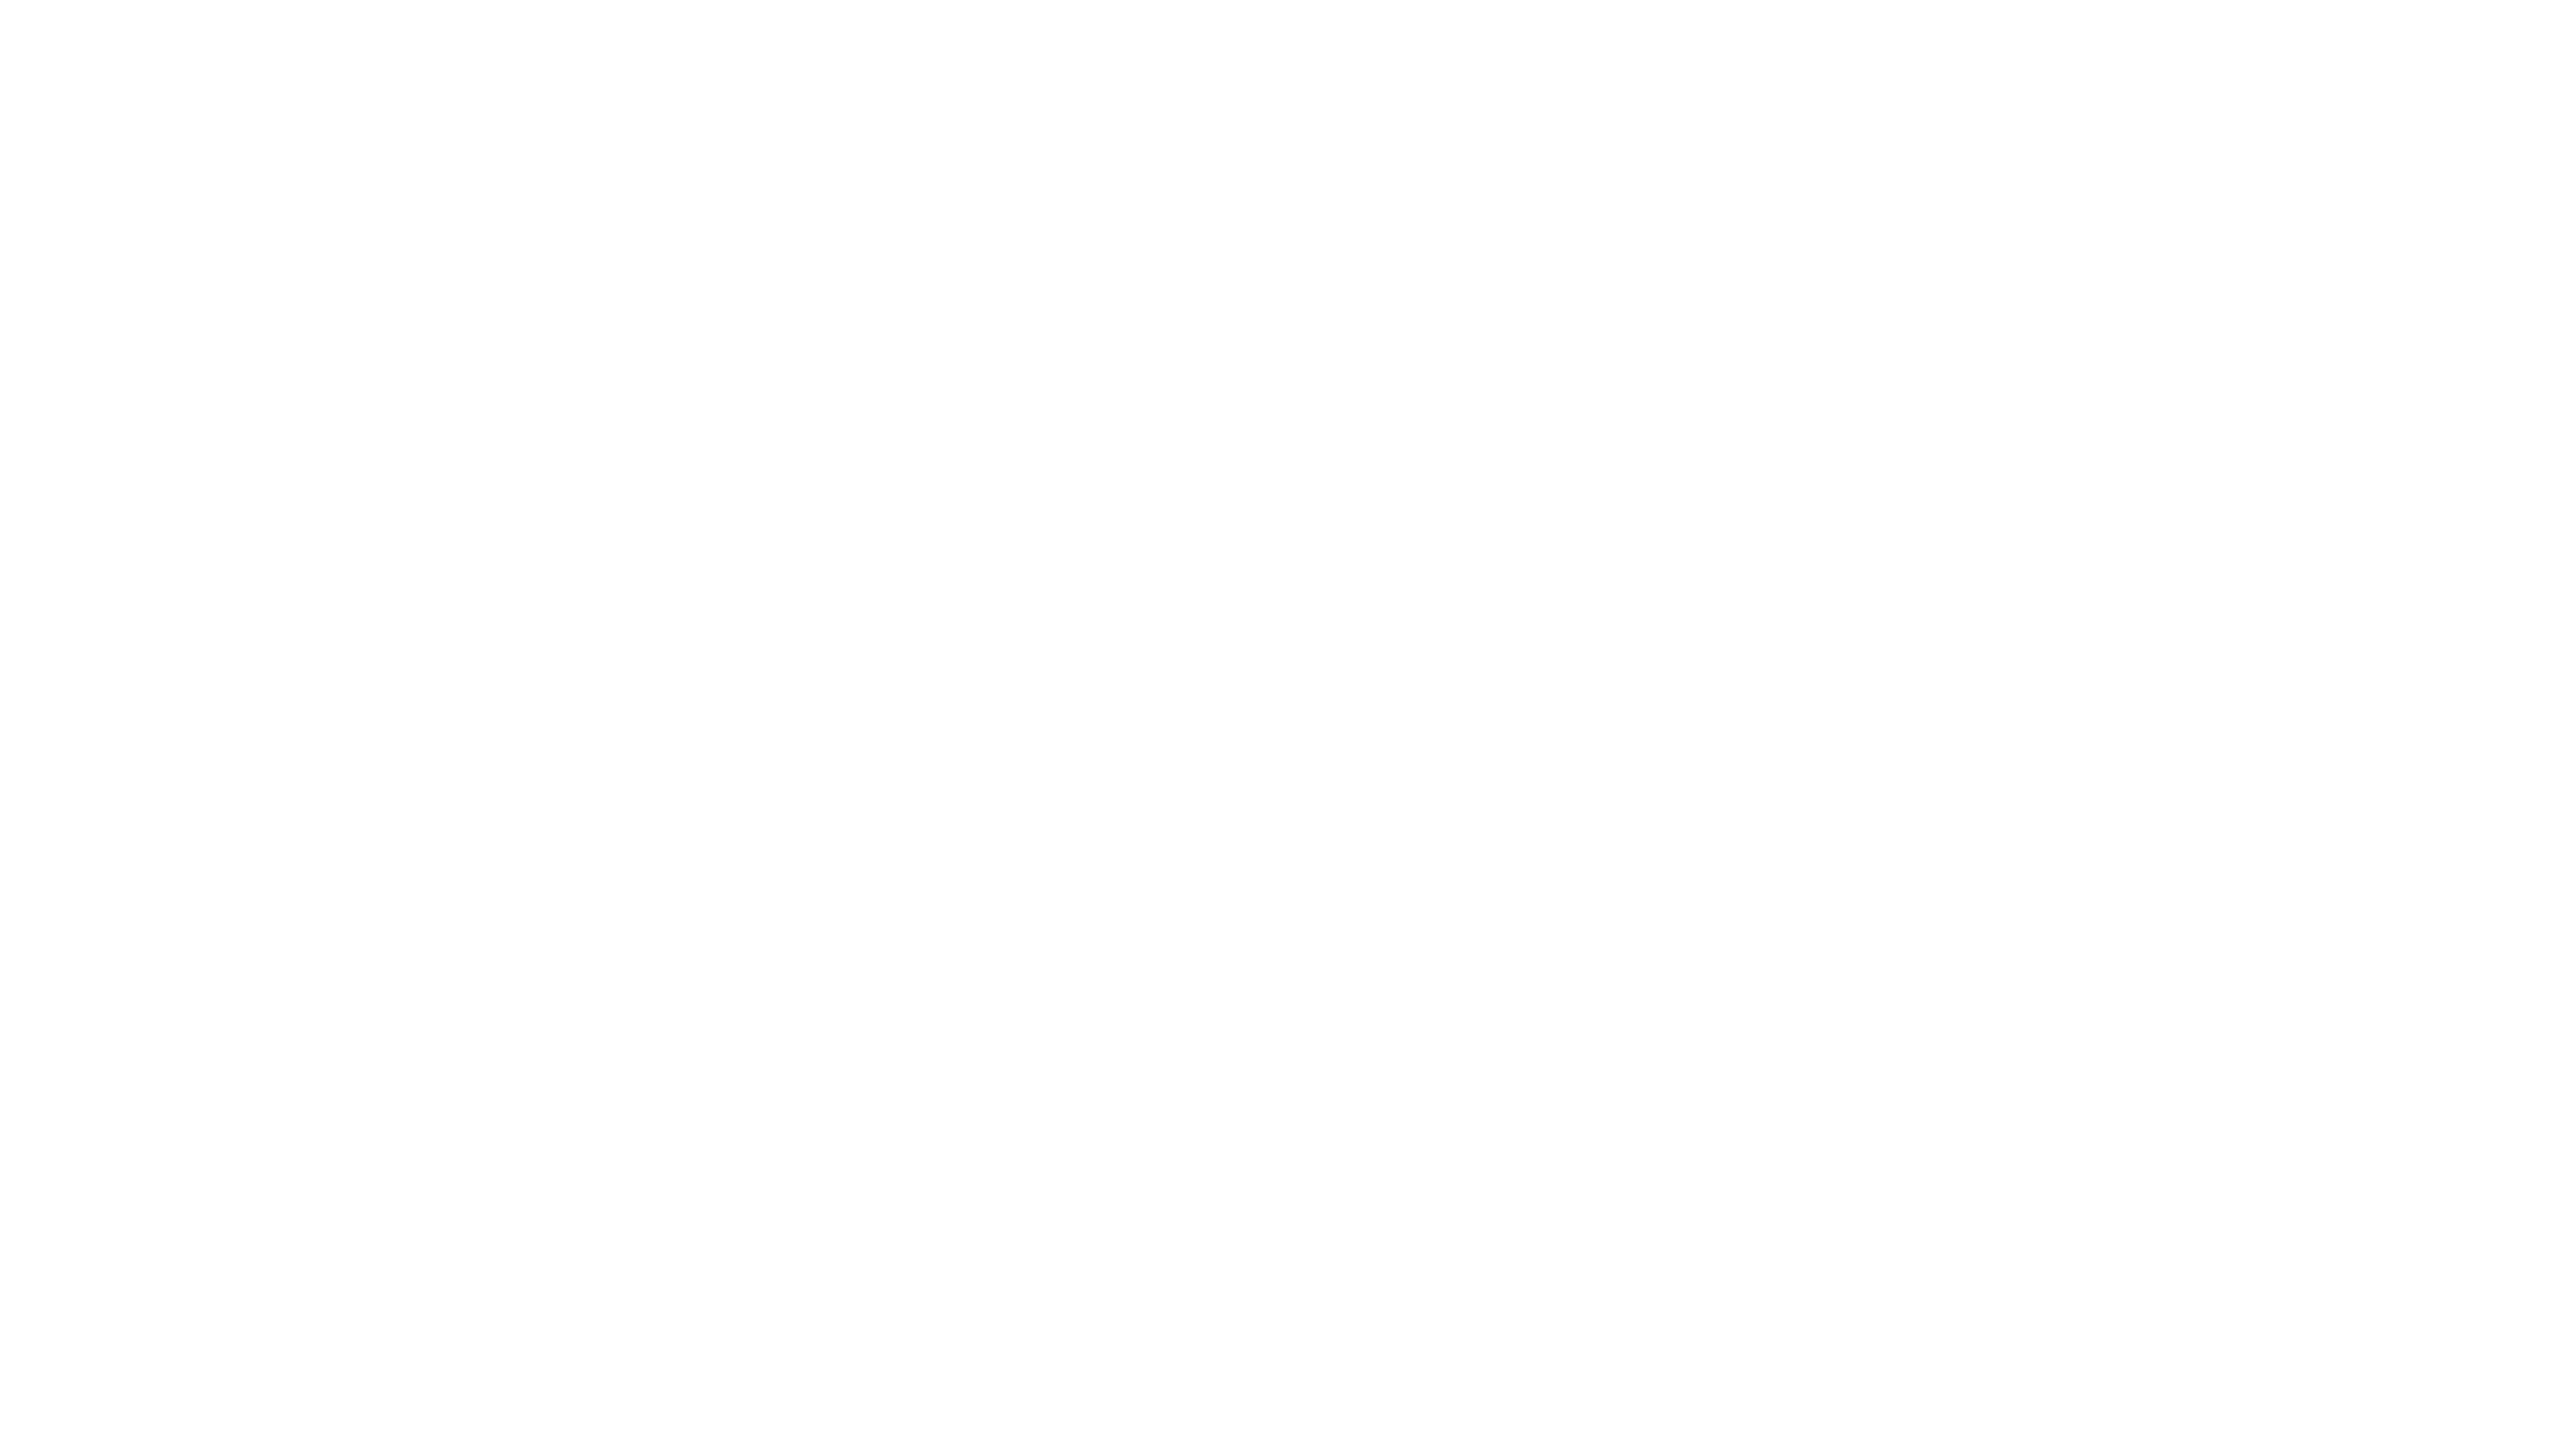 Isuzu-logo-weiss